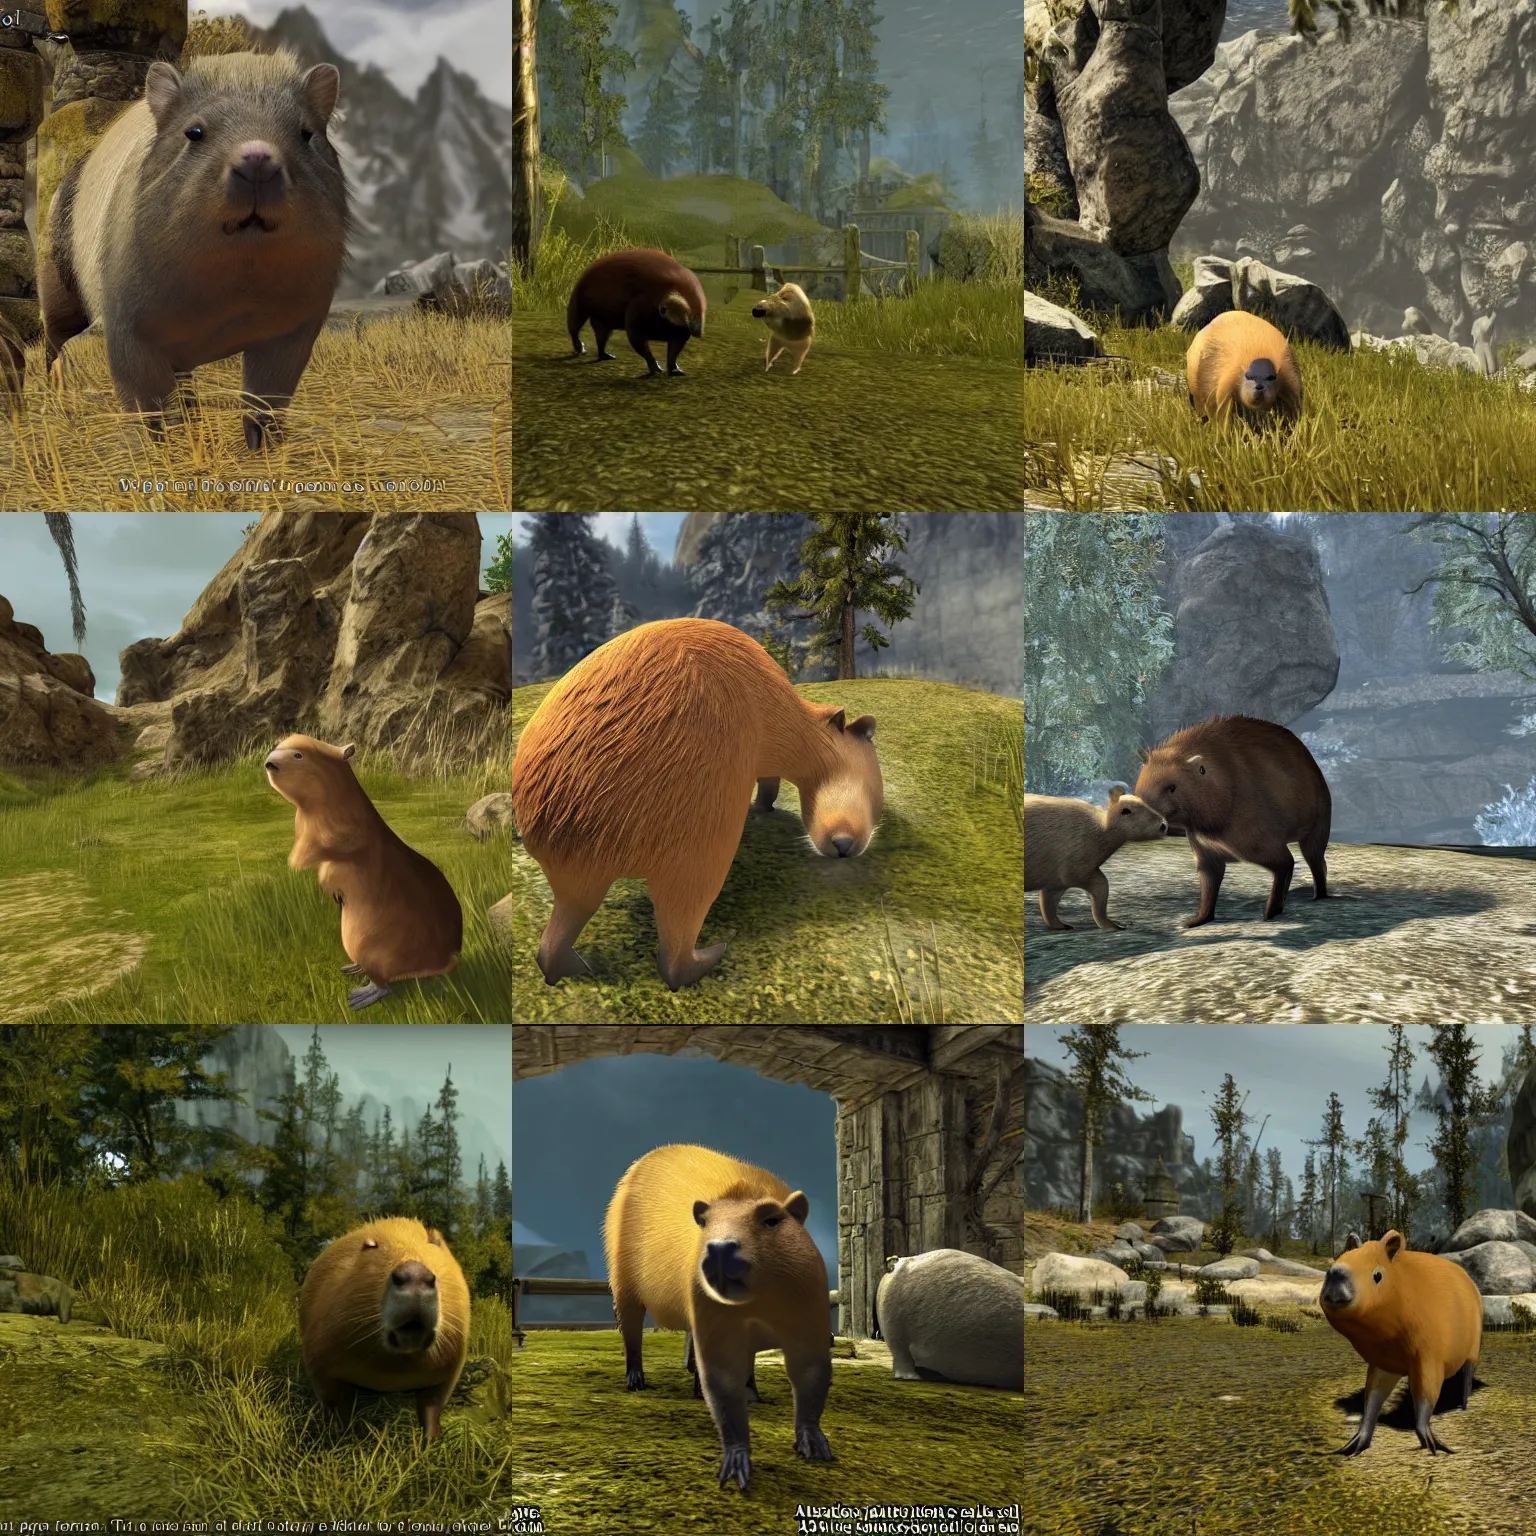 Prompt: Capybara in skyrim, screenshot